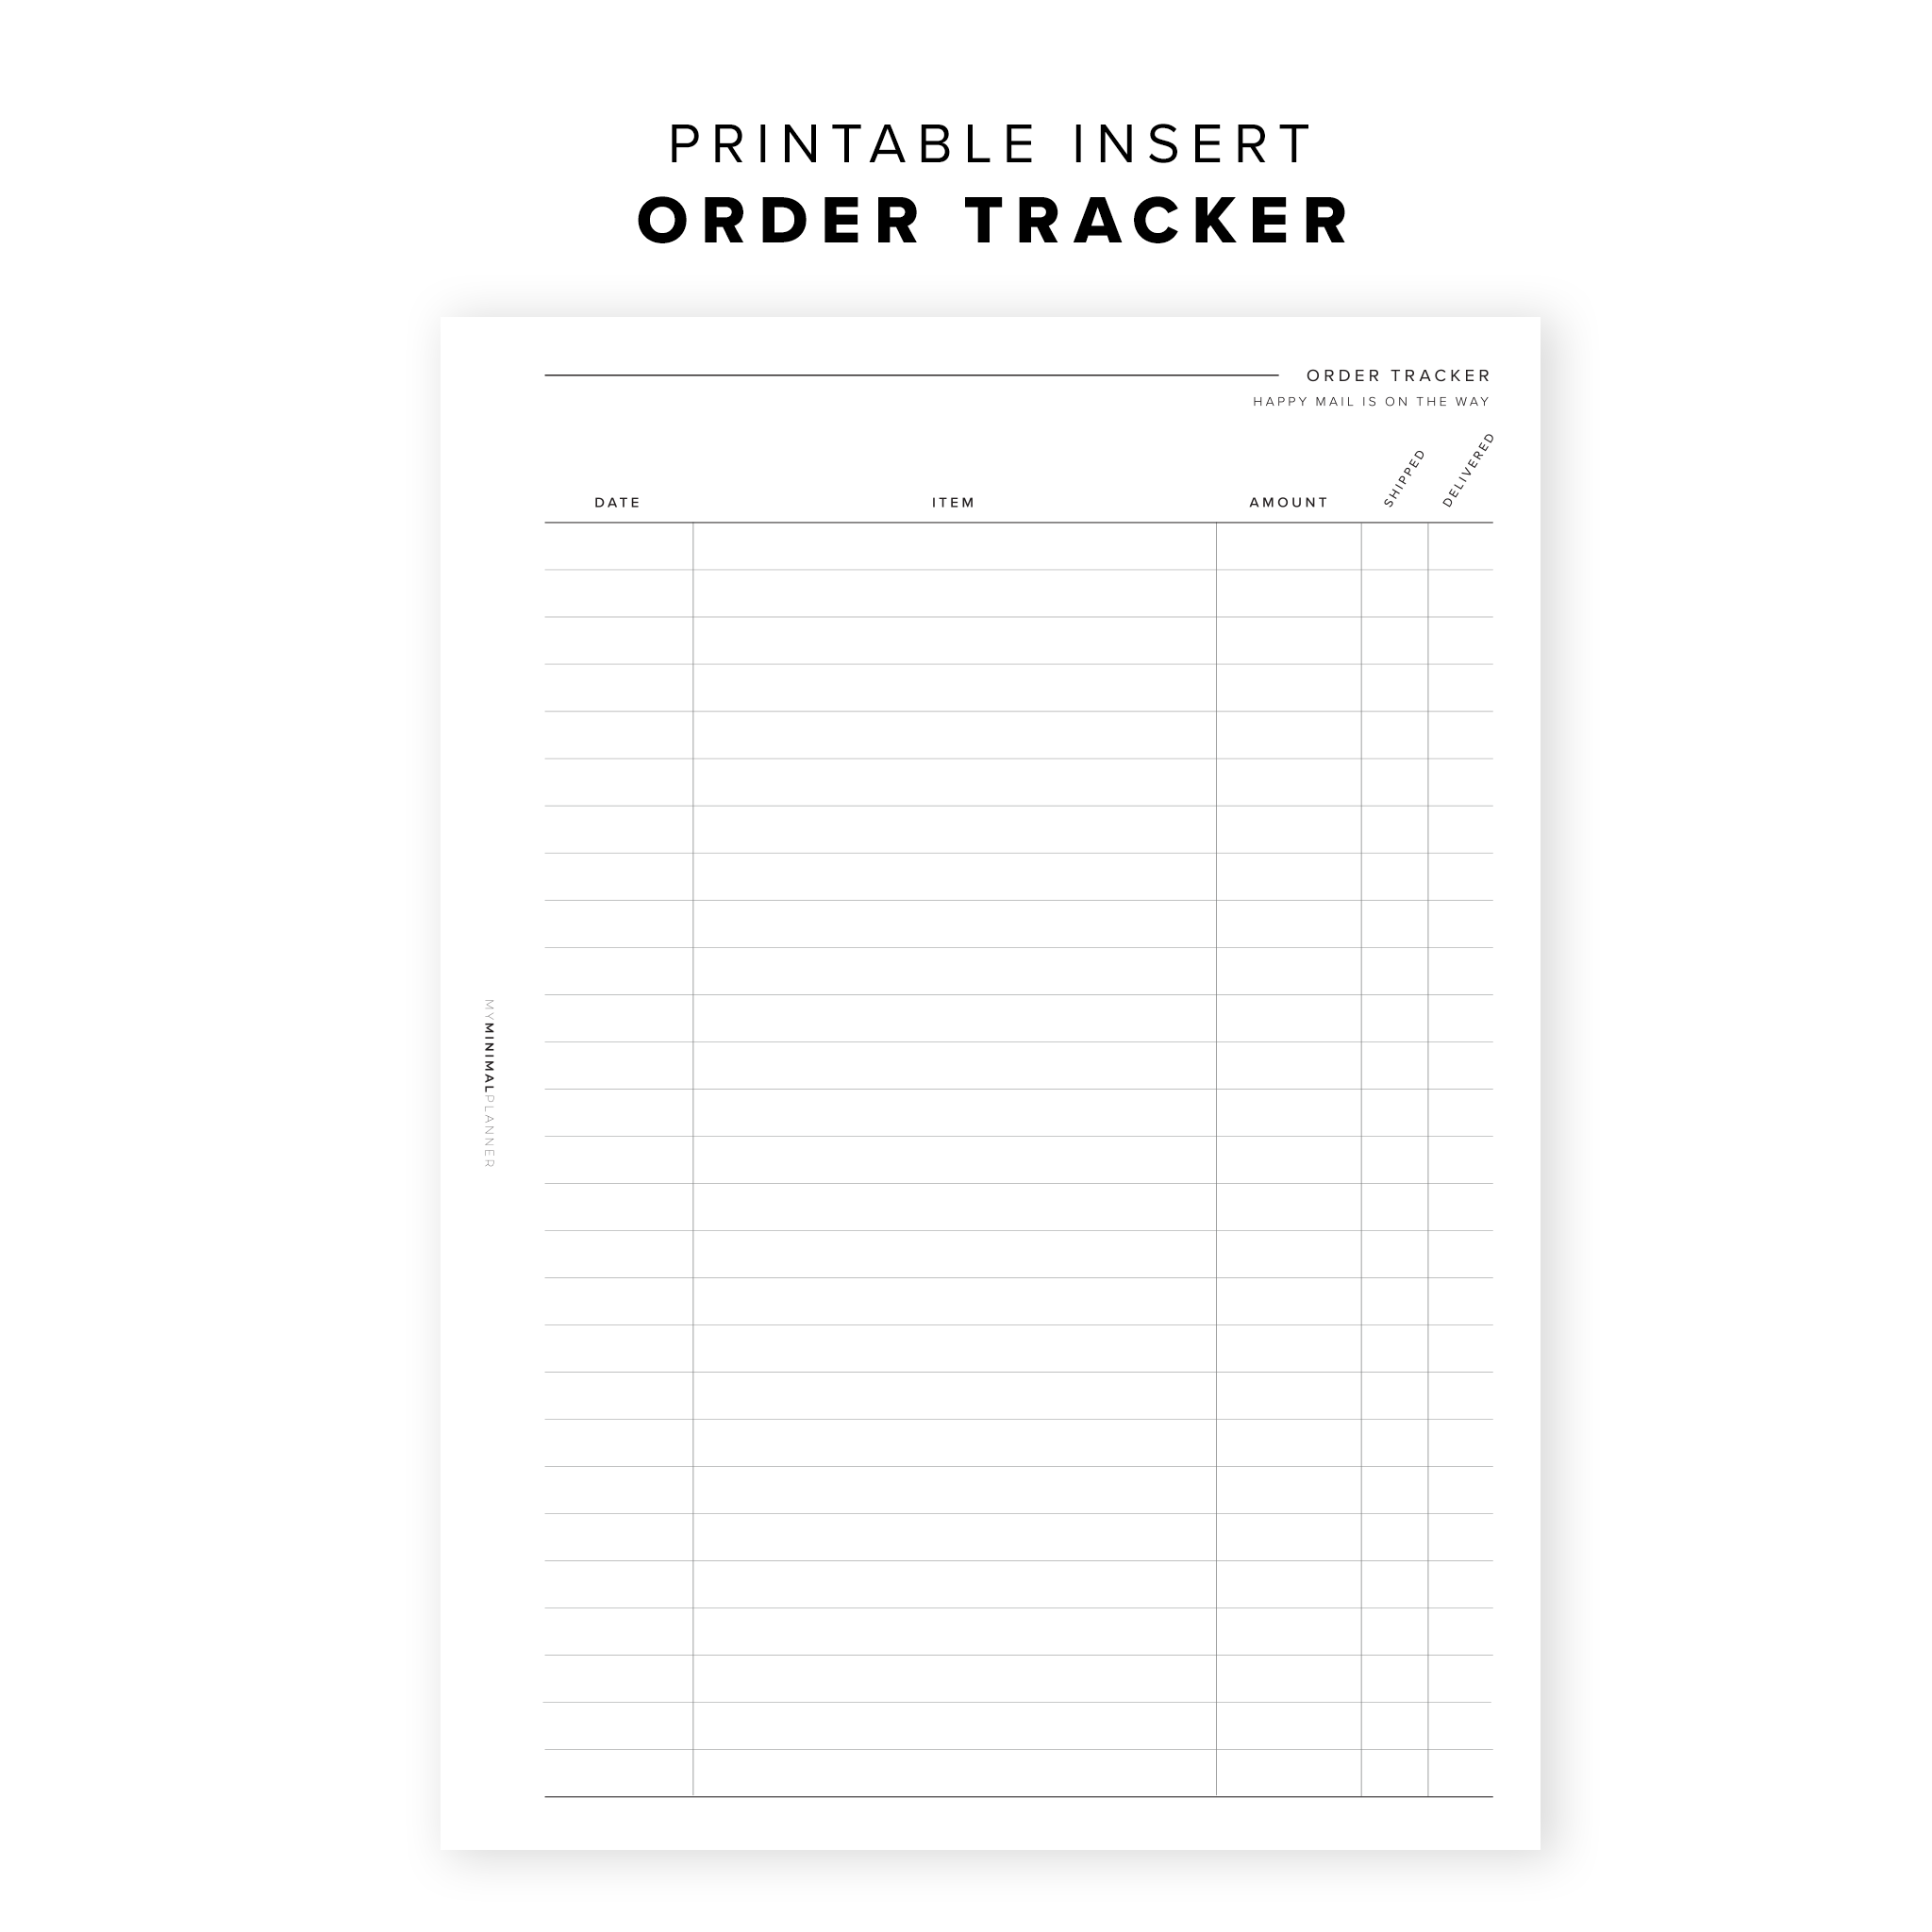 PR16 - Order Tracker - Printable Insert